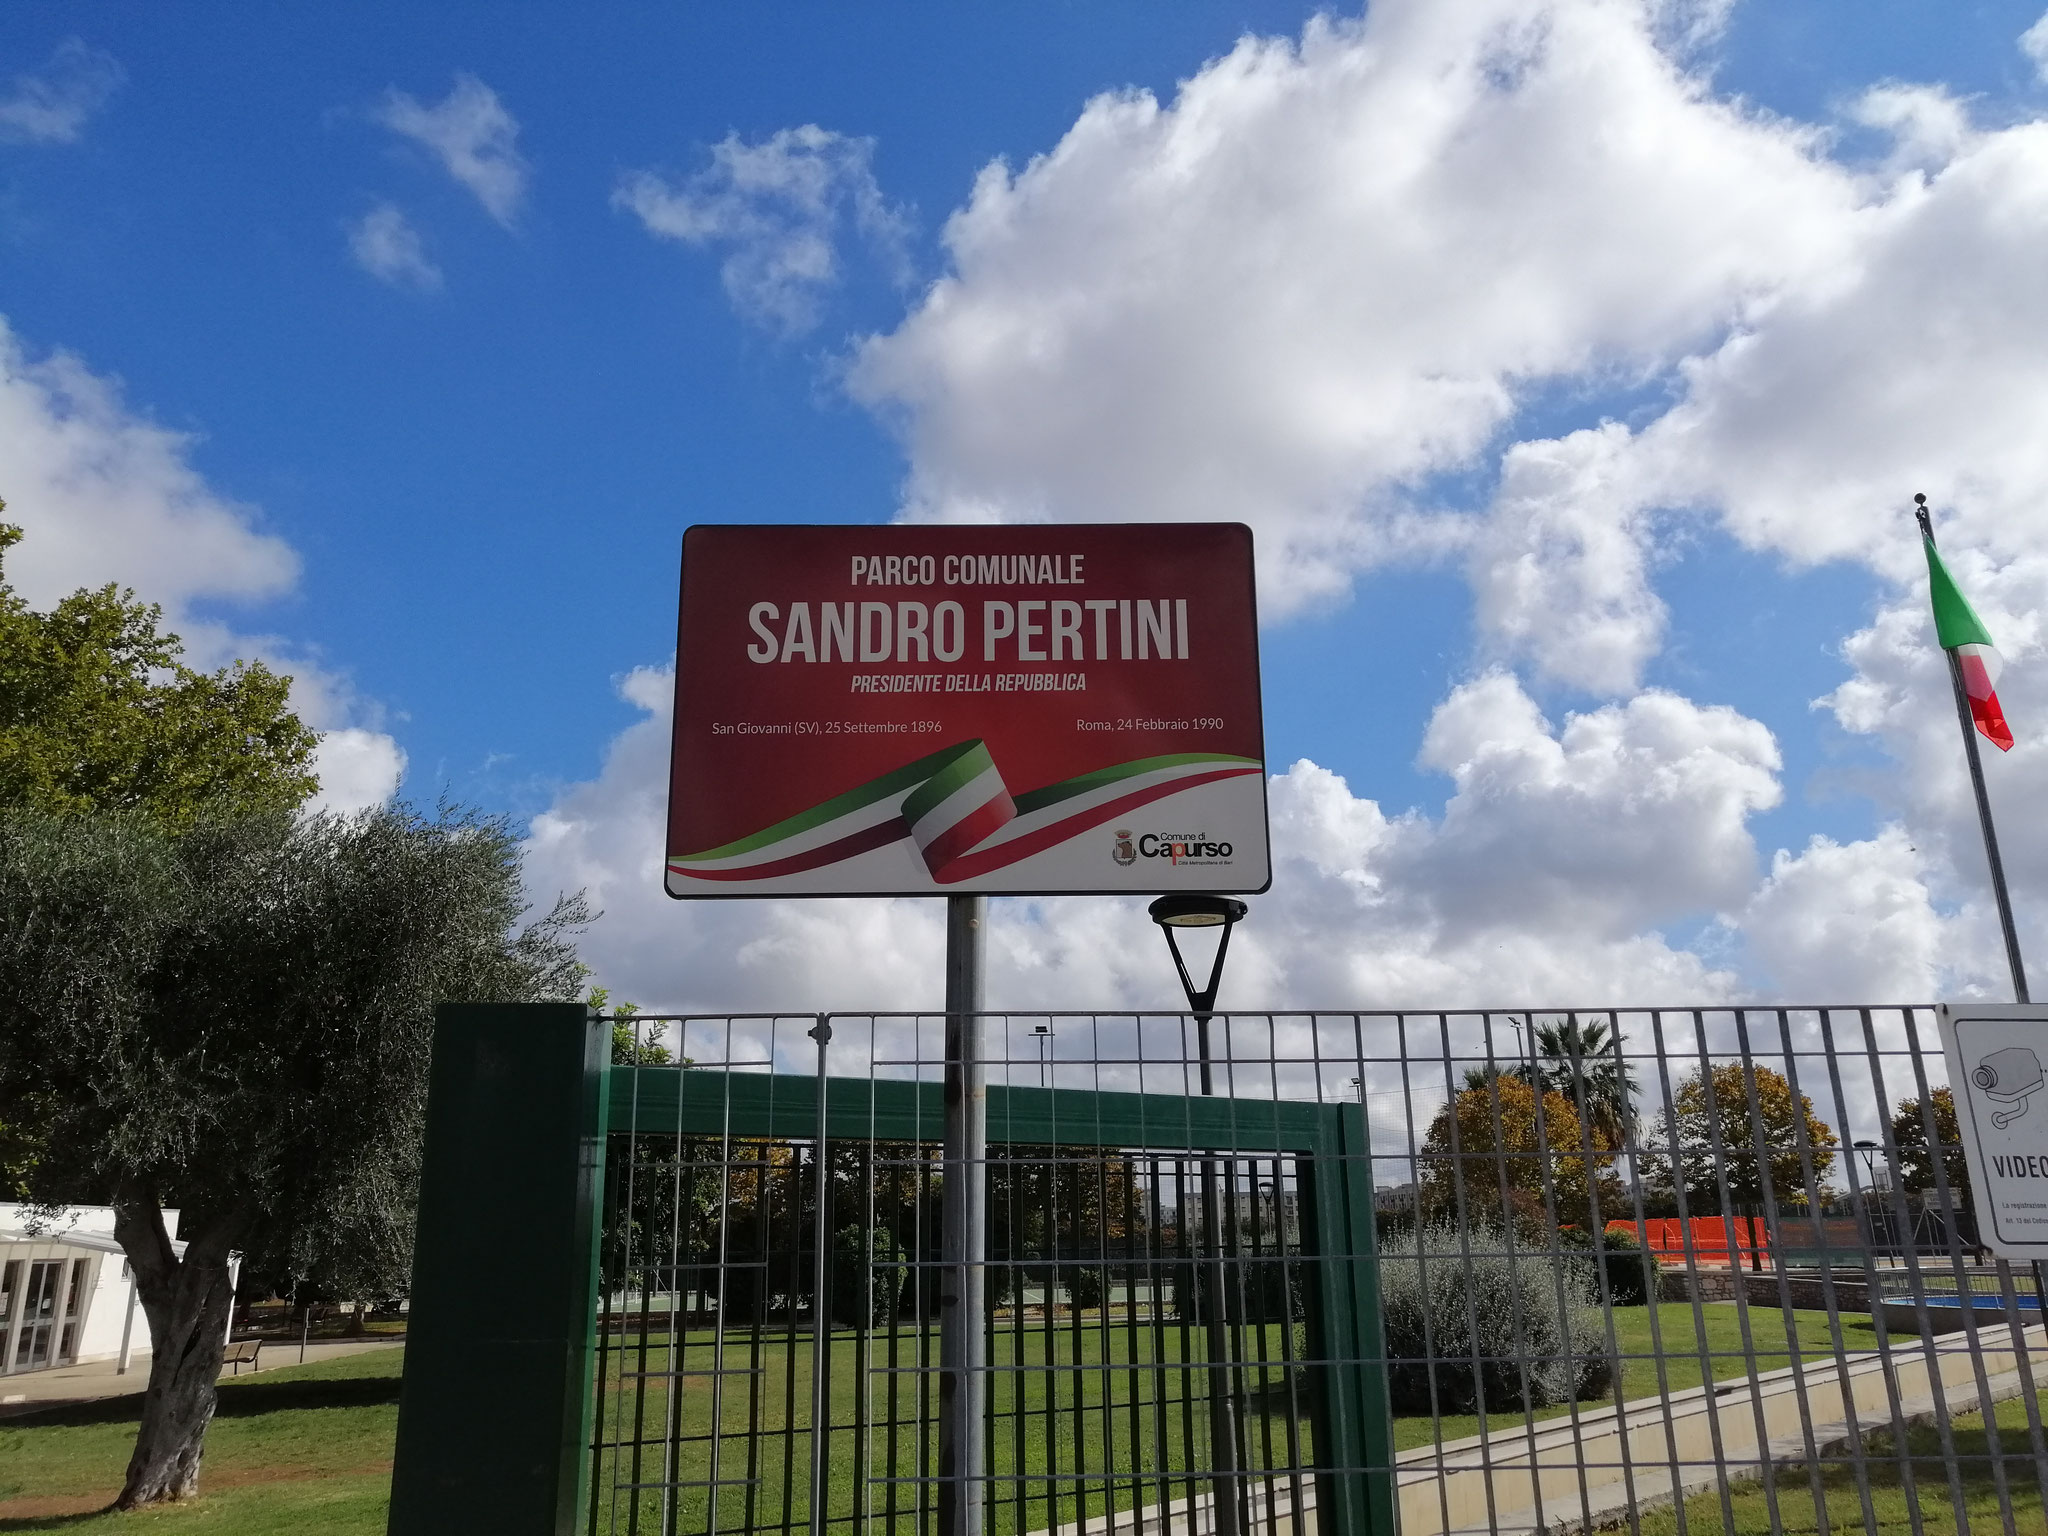 Parco comunale Sandro Pertini - esterno